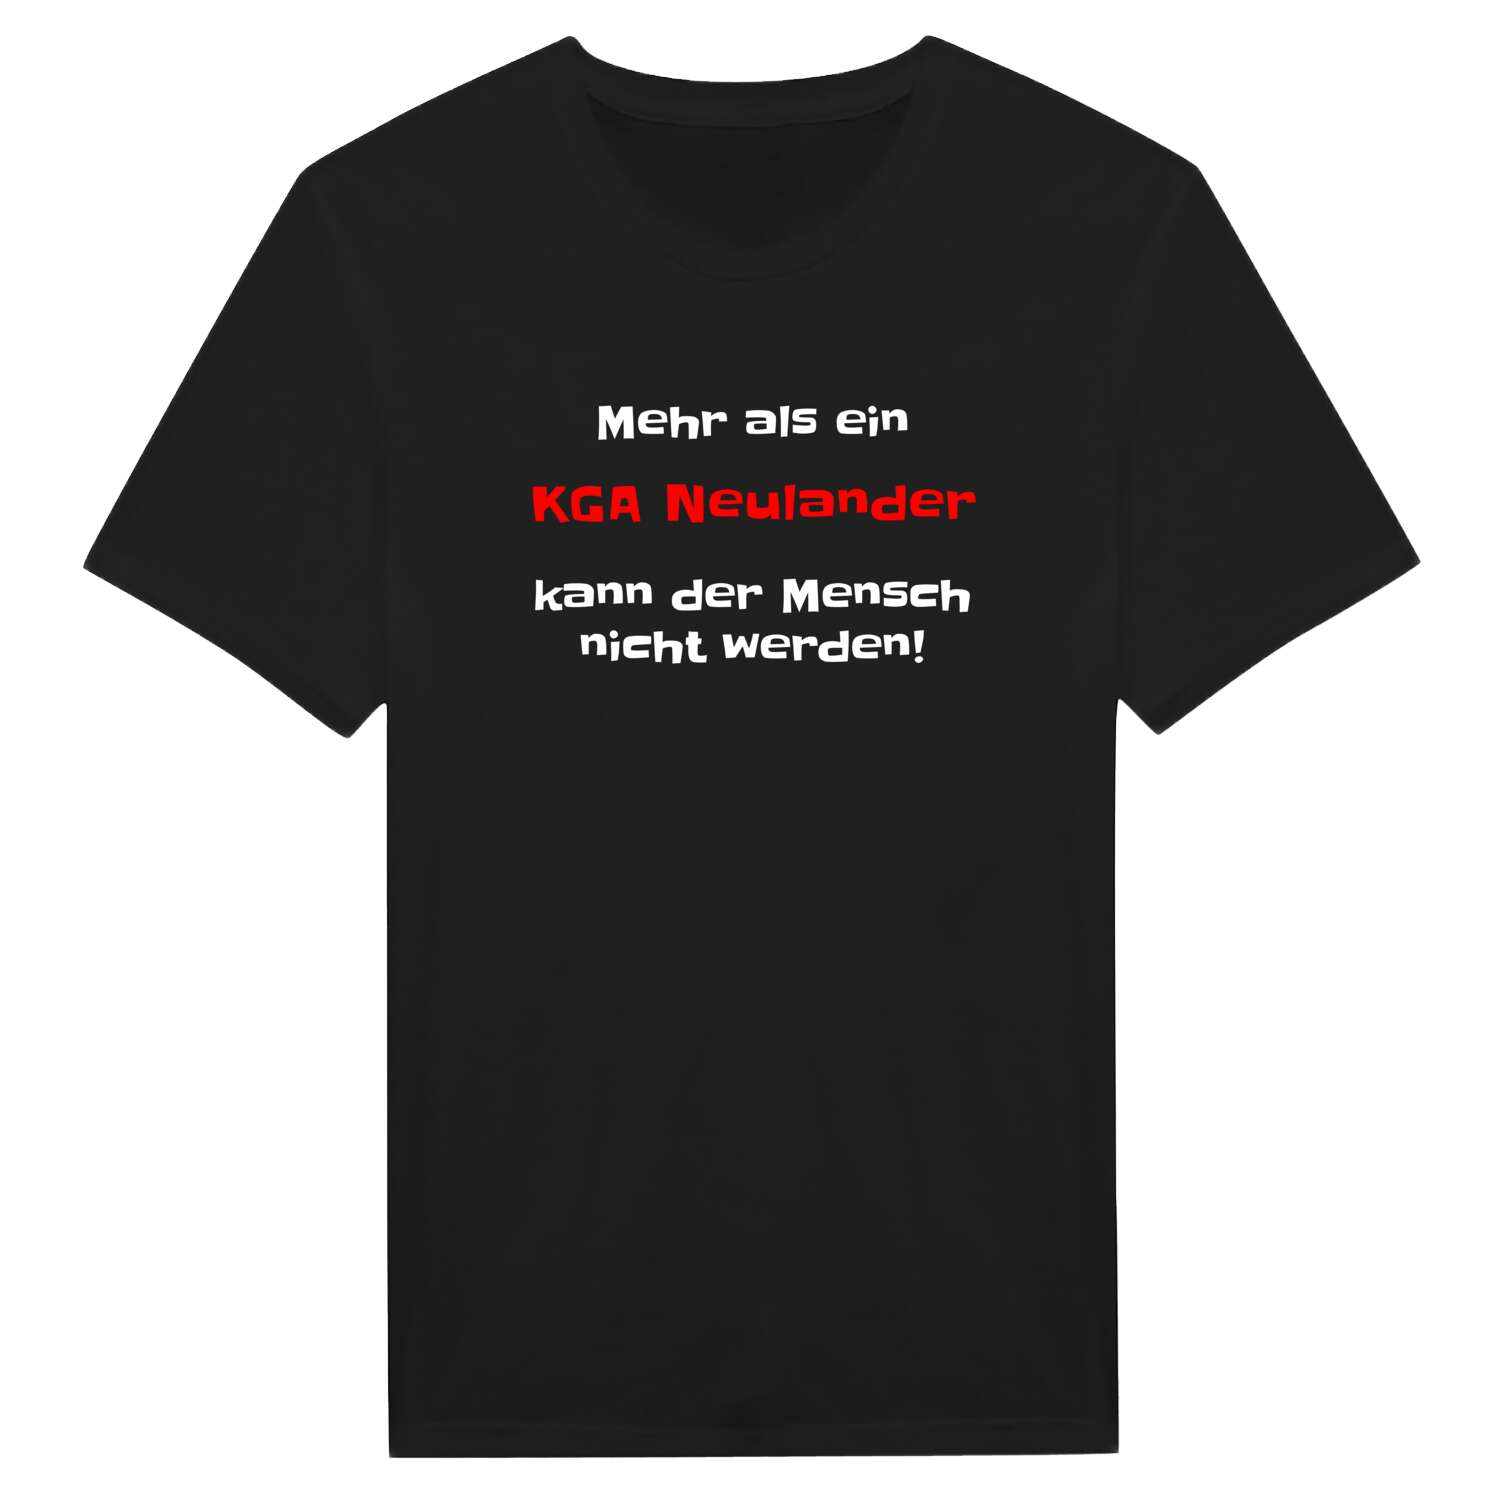 KGA Neuland T-Shirt »Mehr als ein«